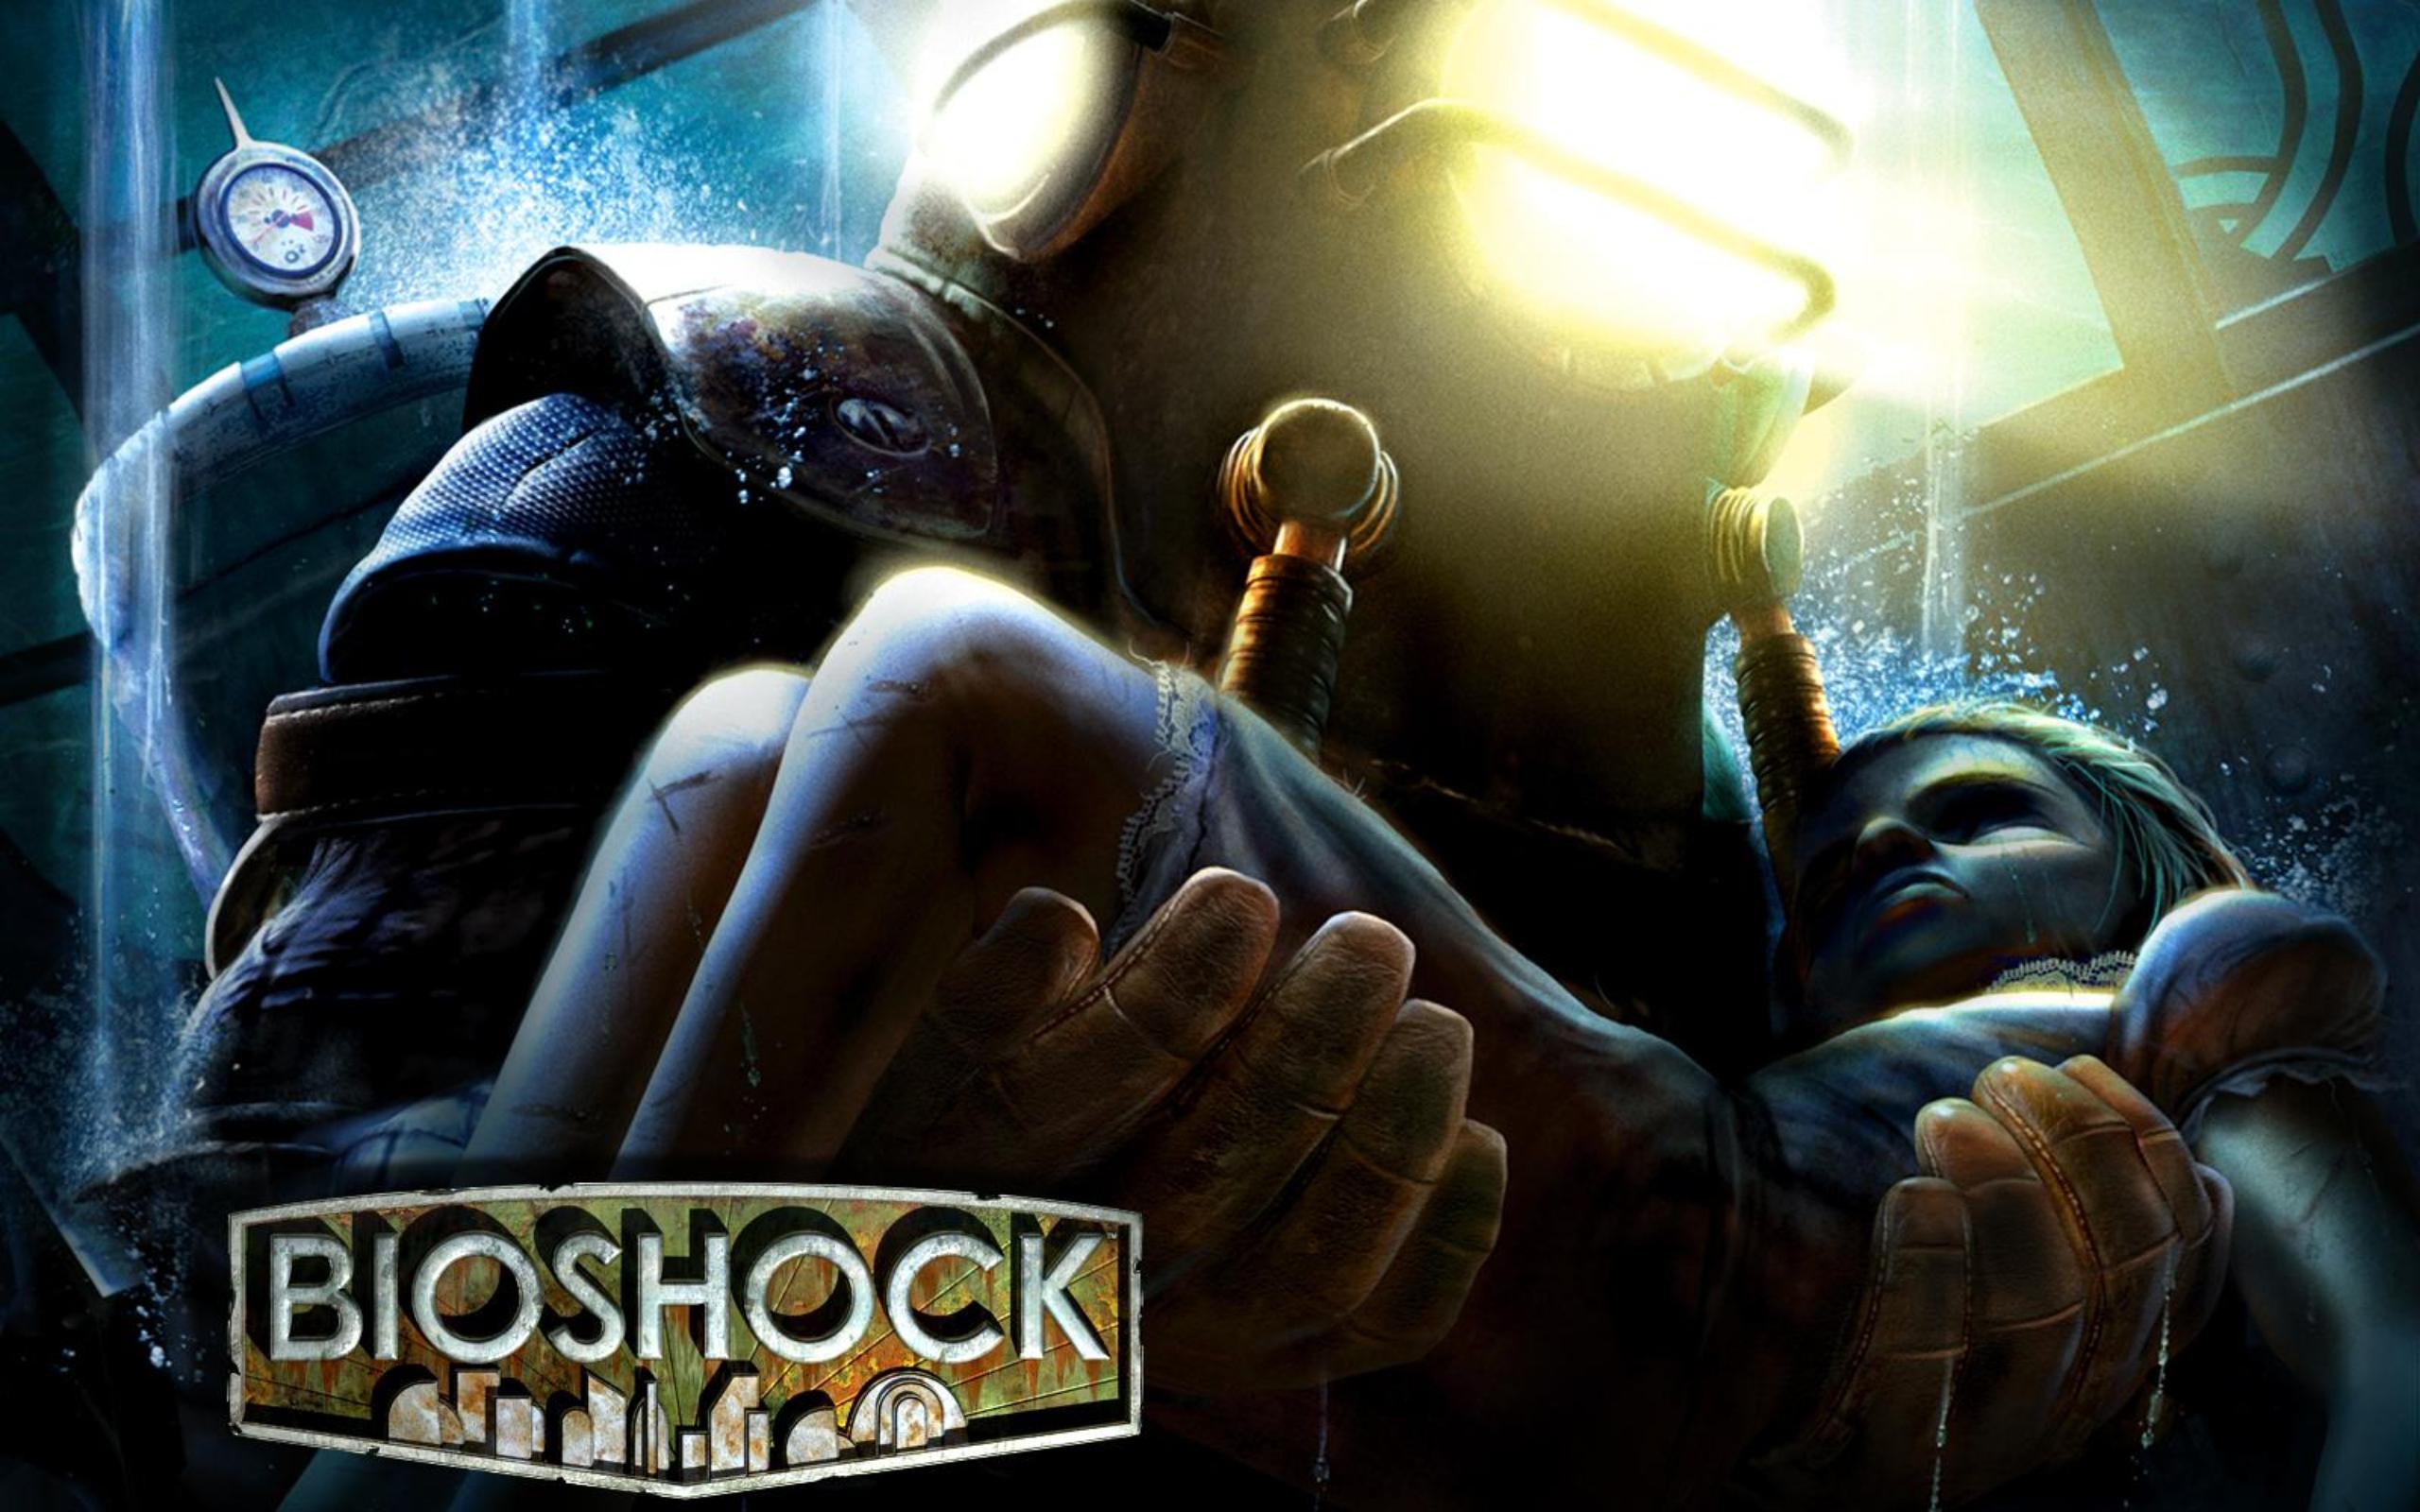 A dark underwater metropolis depicted in a video game called Bioshock.